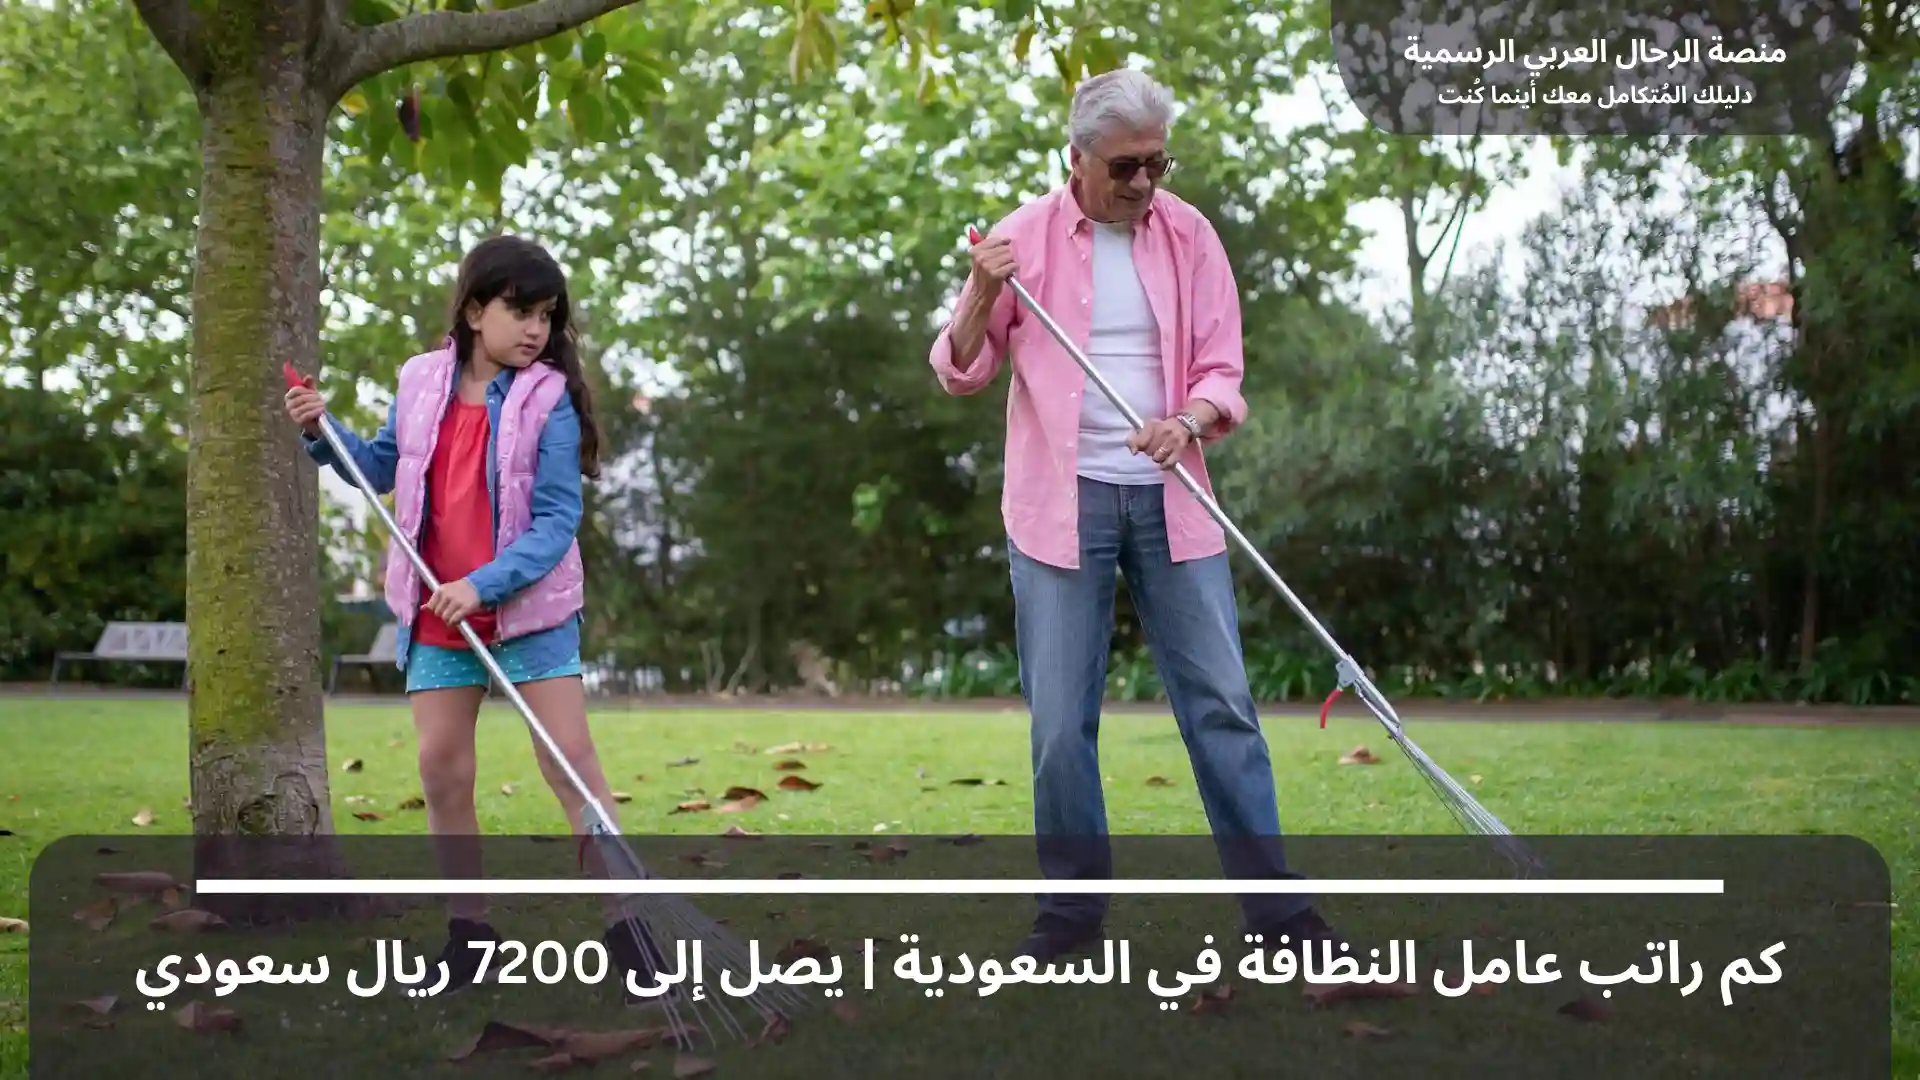 كم راتب عامل النظافة في السعودية يصل إلى 7200 ريال سعودي